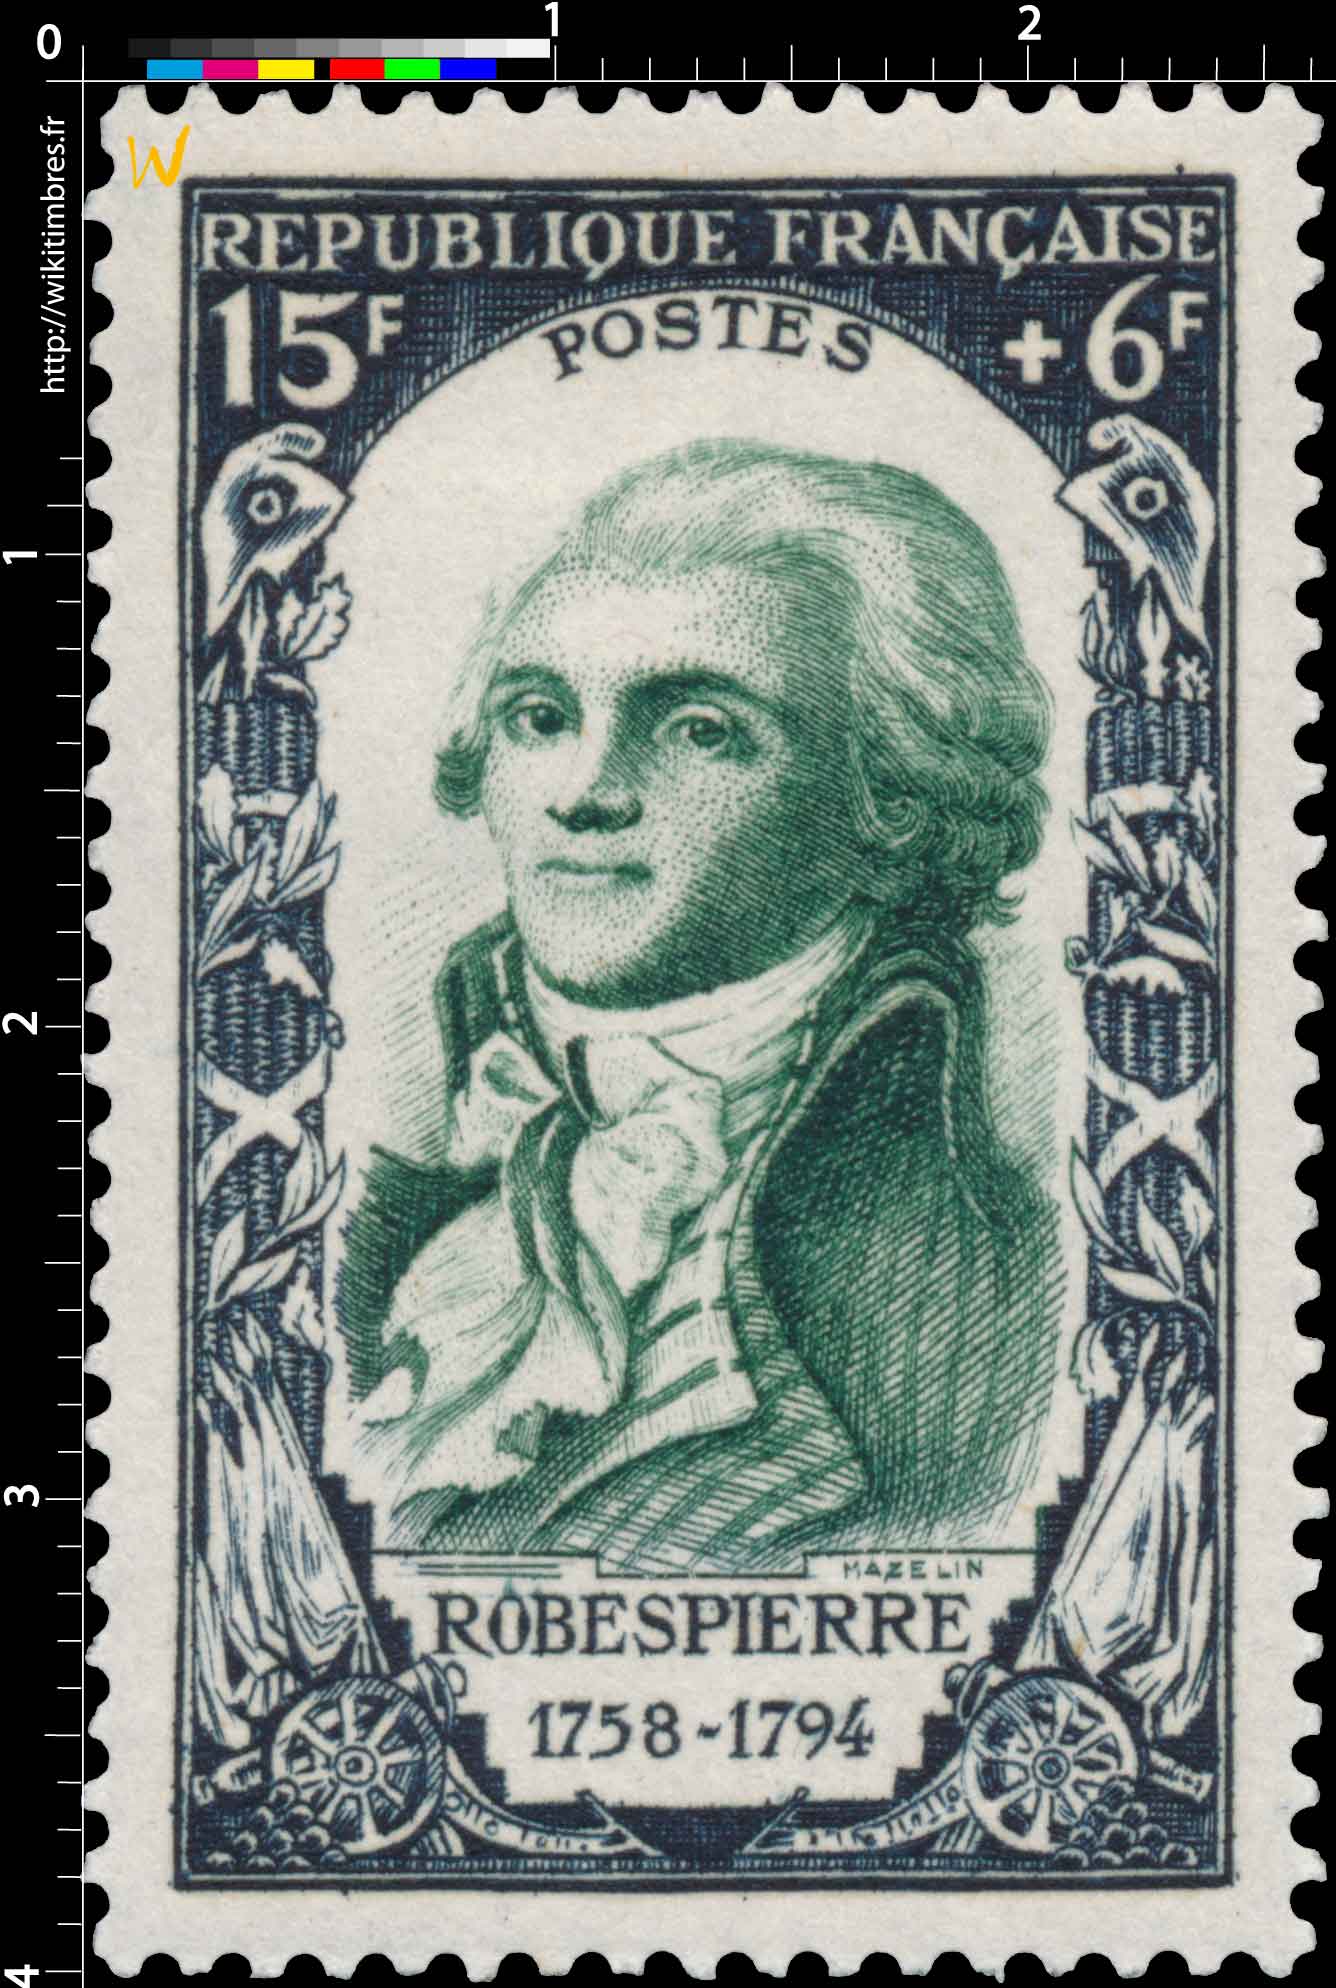 ROBESPIERRE 1758-1794